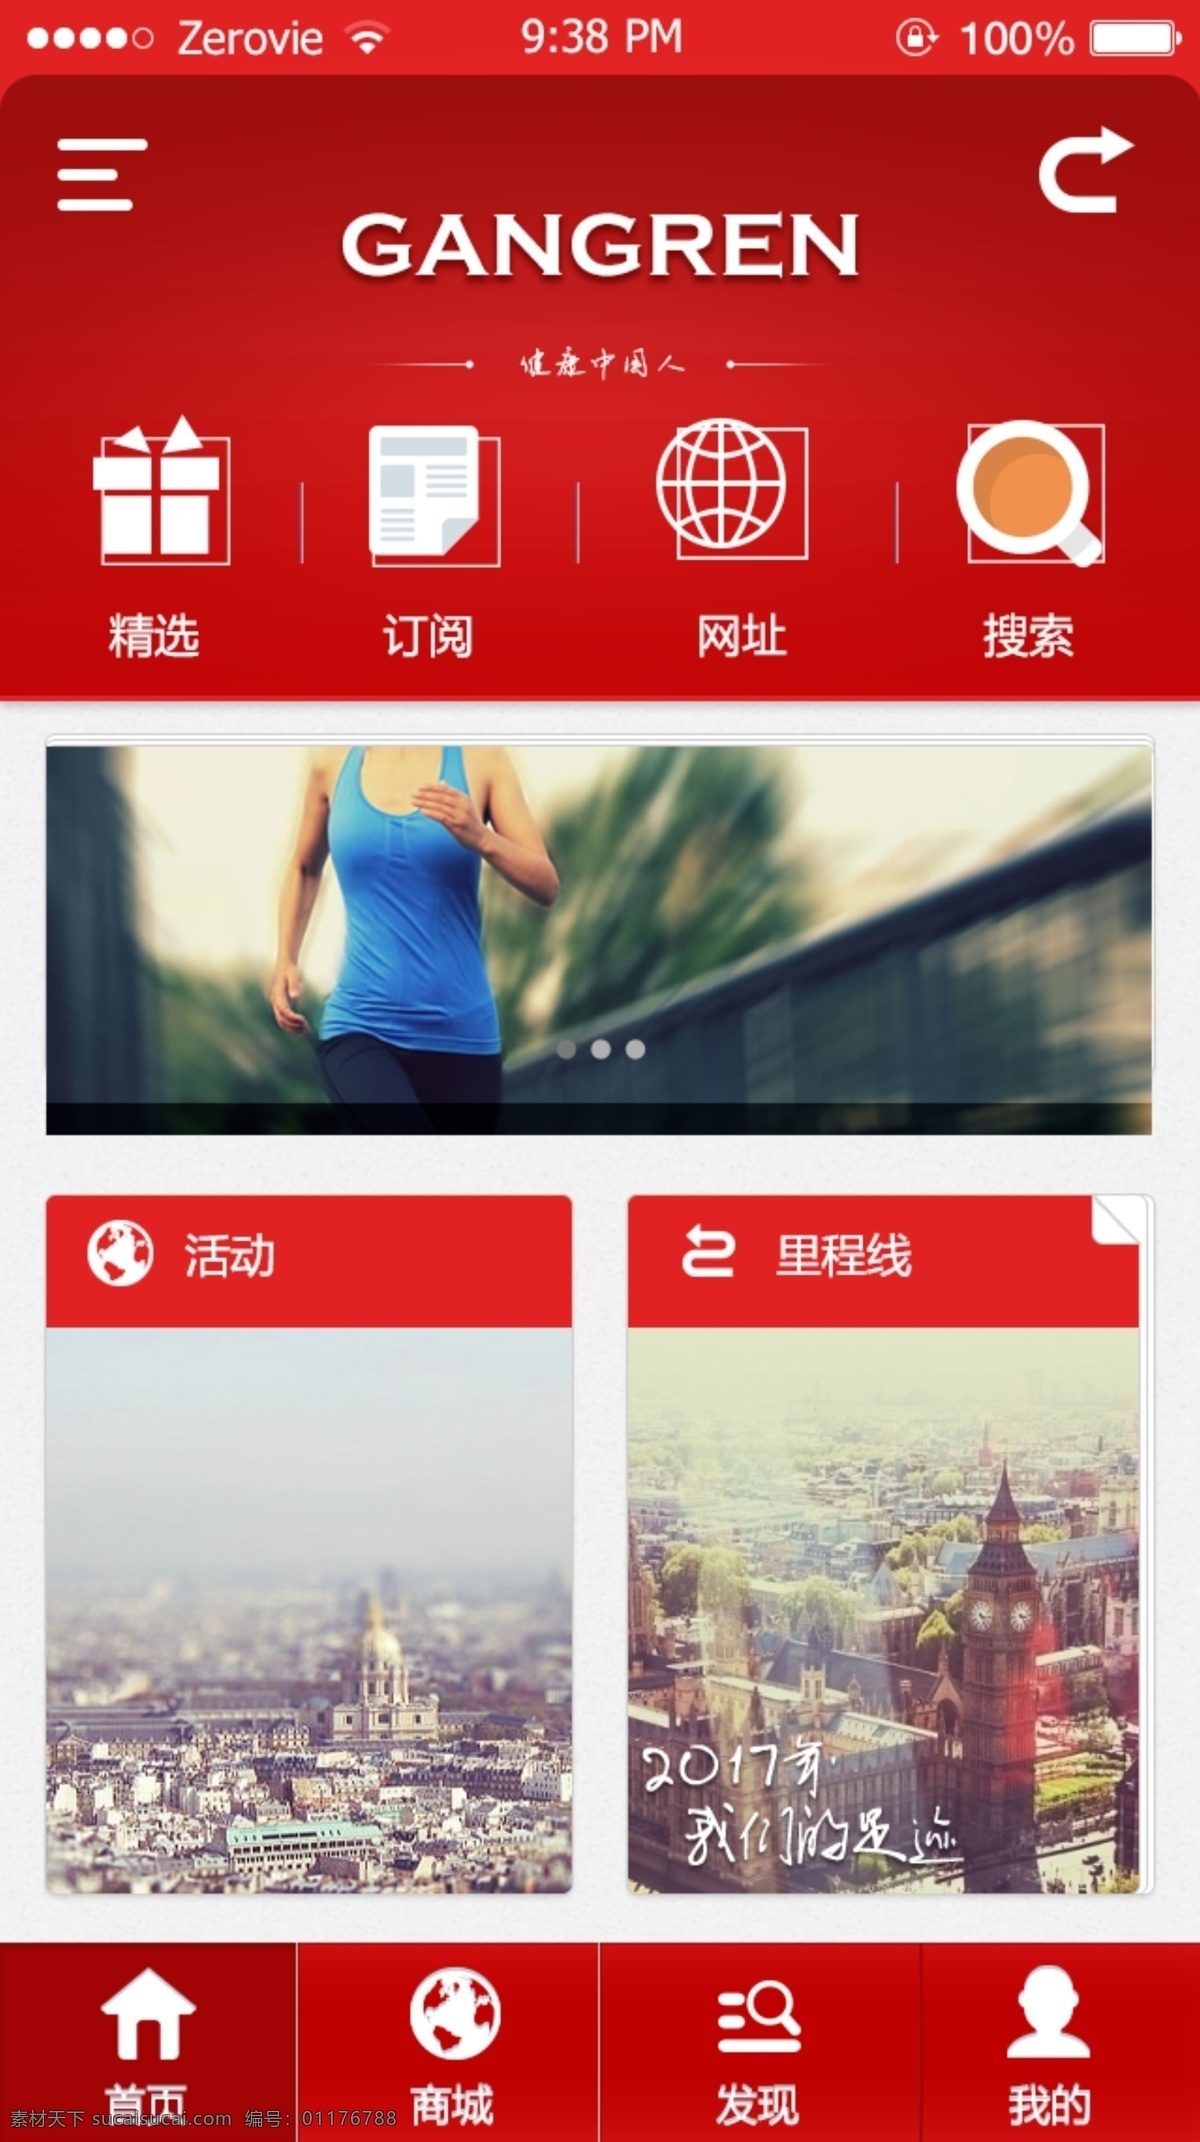 手机 app 首页 页面设计 板式 健身 红色 平面